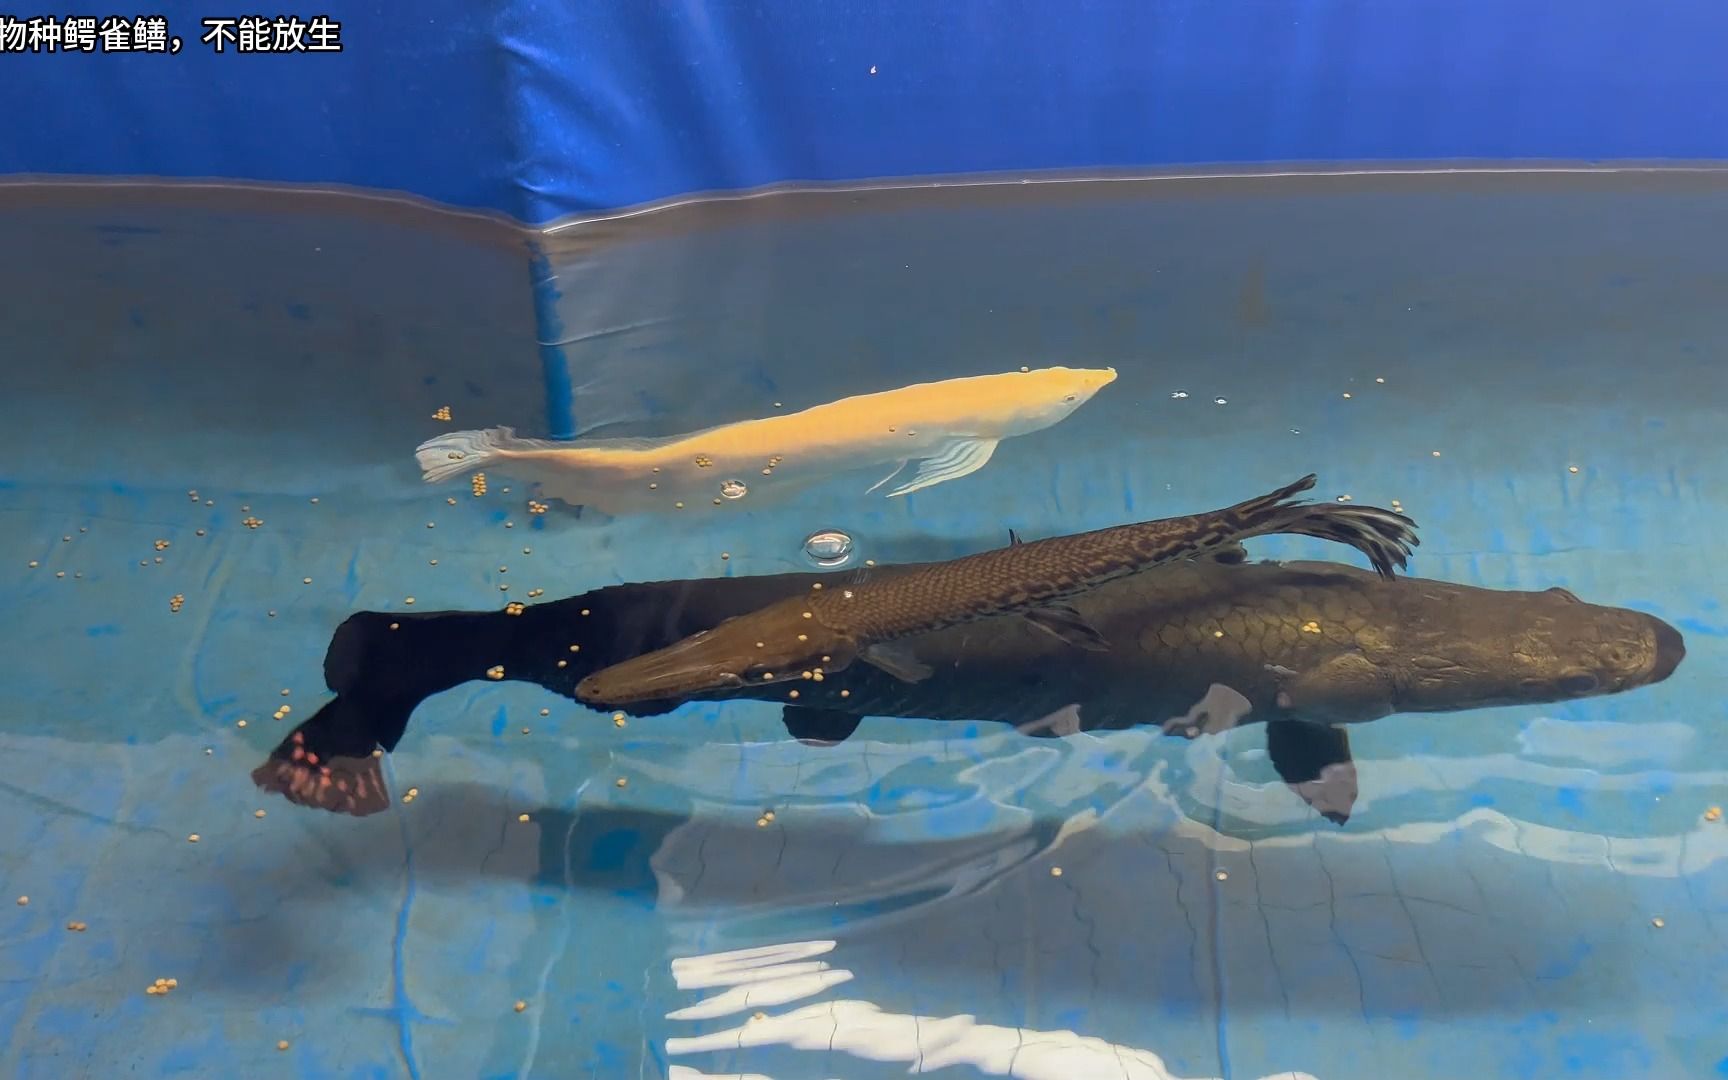 鳄雀鳝和巨骨舌鱼谁更厉害?48厘米鳄雀鳝放进猛鱼池,结局意外!